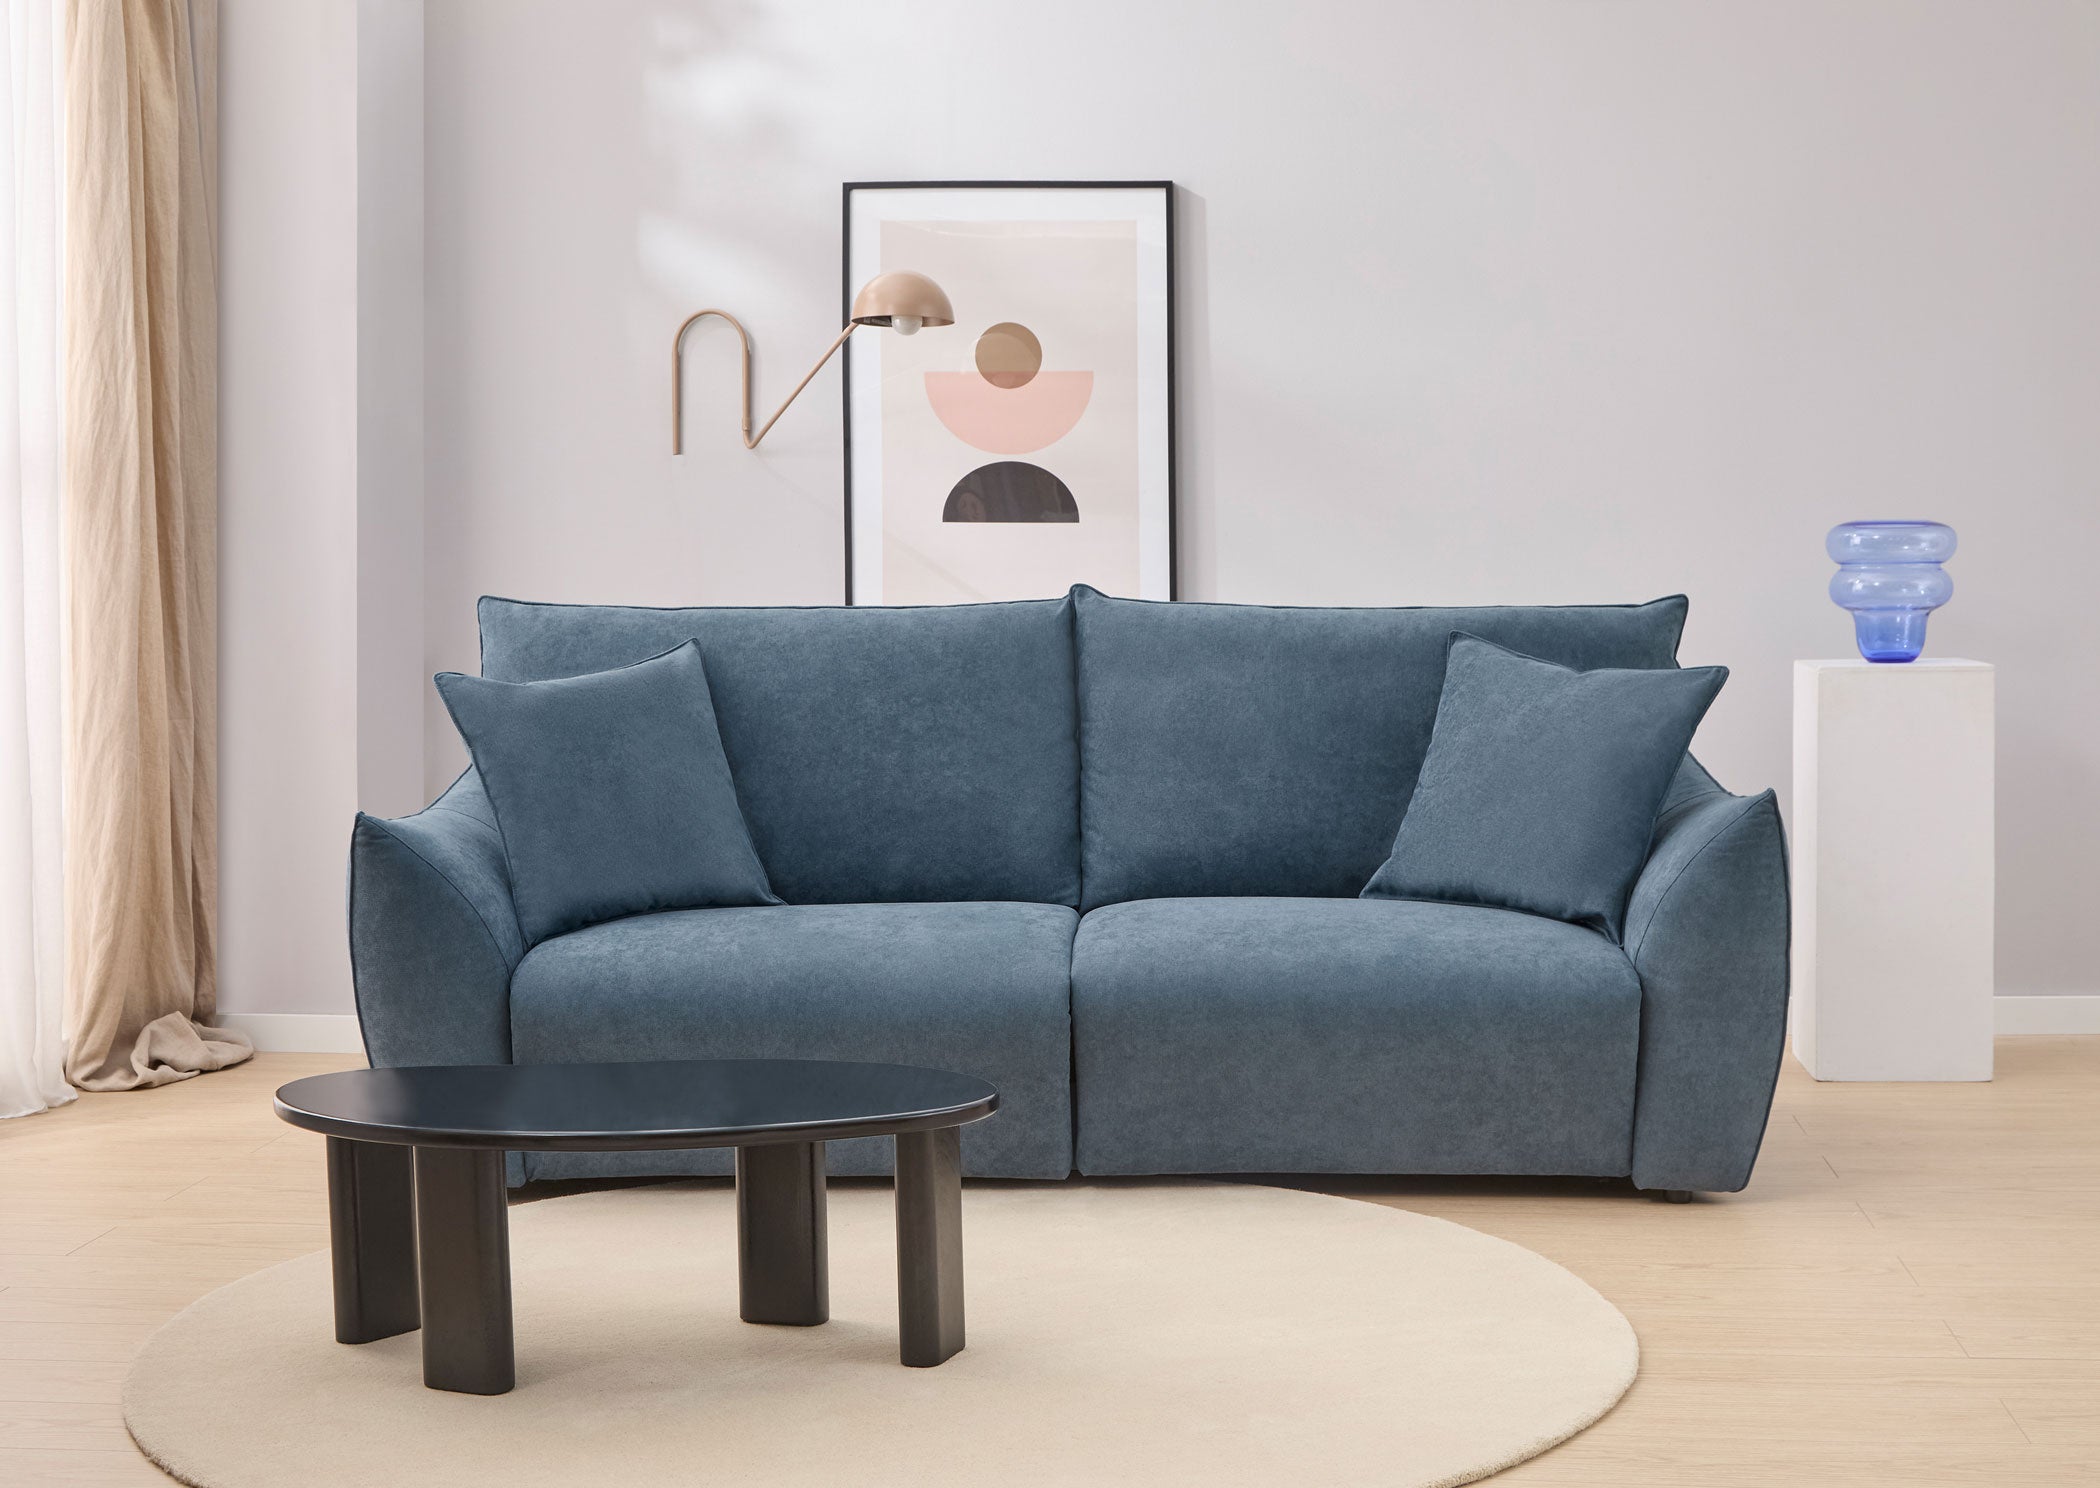  Sofa Cama